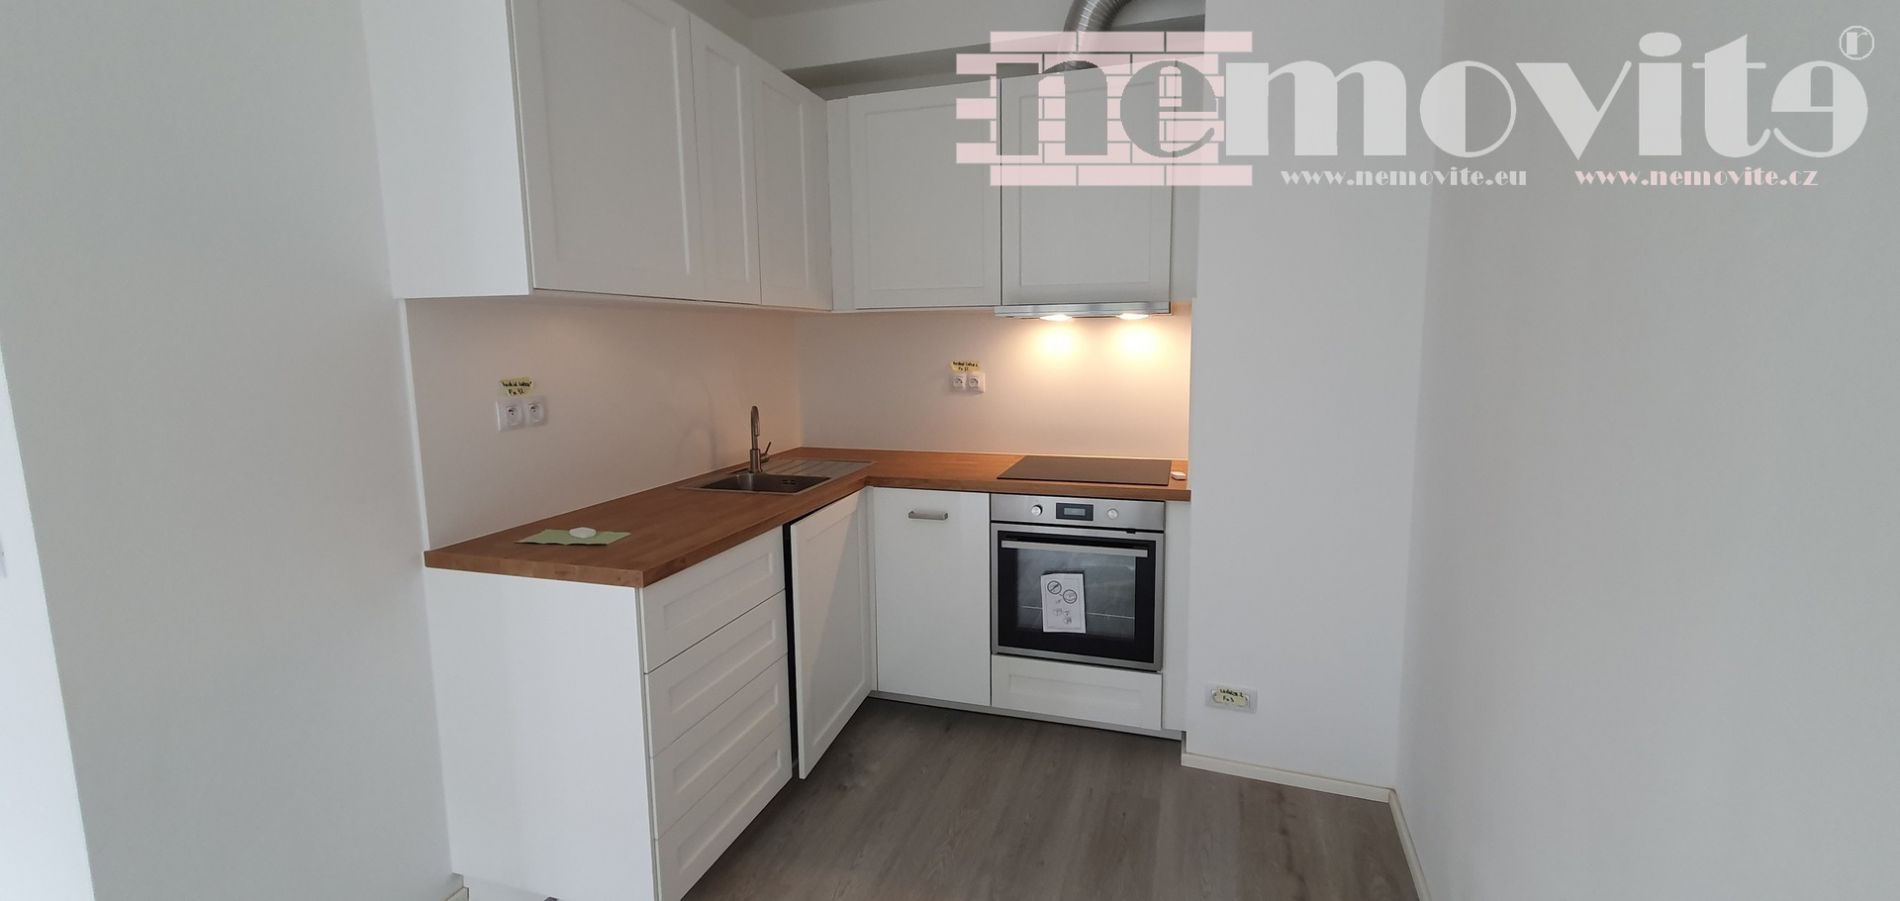 Exkluzivně nabízíme na prodej  byt v novostavbě 1+kk, 38 m2 - Praha - Michle, obrázek č. 2